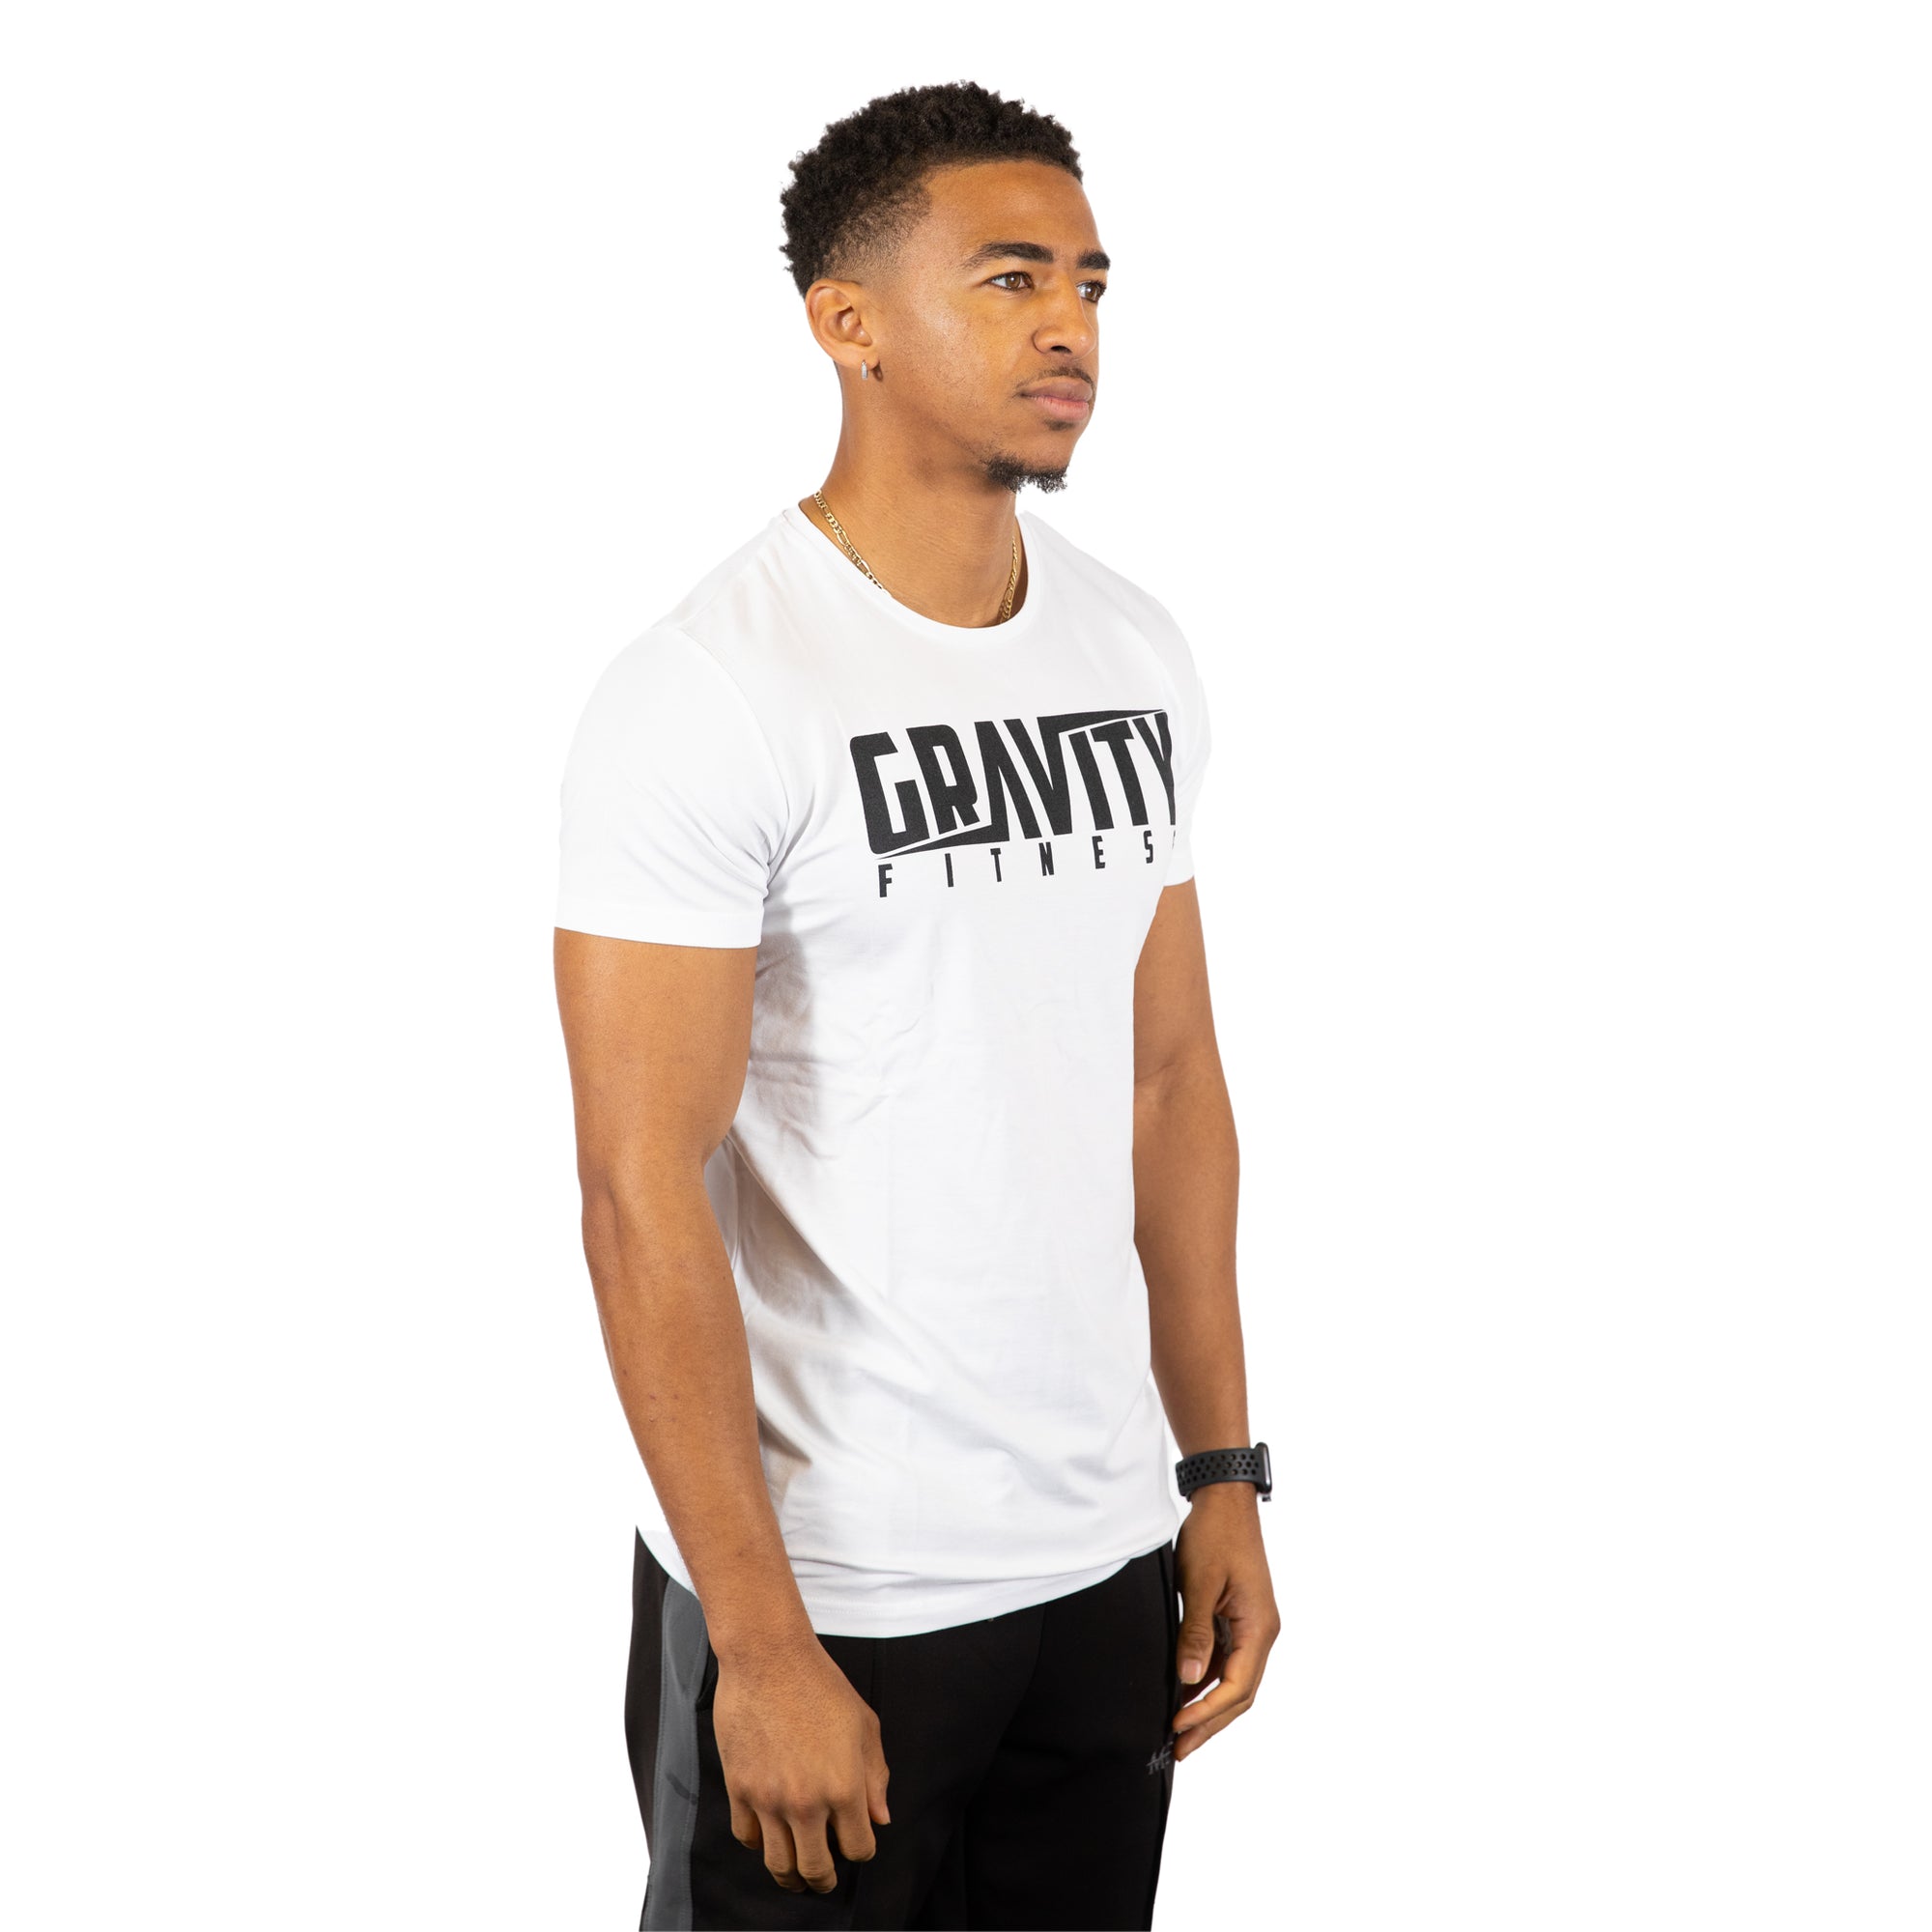 Gravity Fitness "LOGO" Bamboo Training T Shirt - White